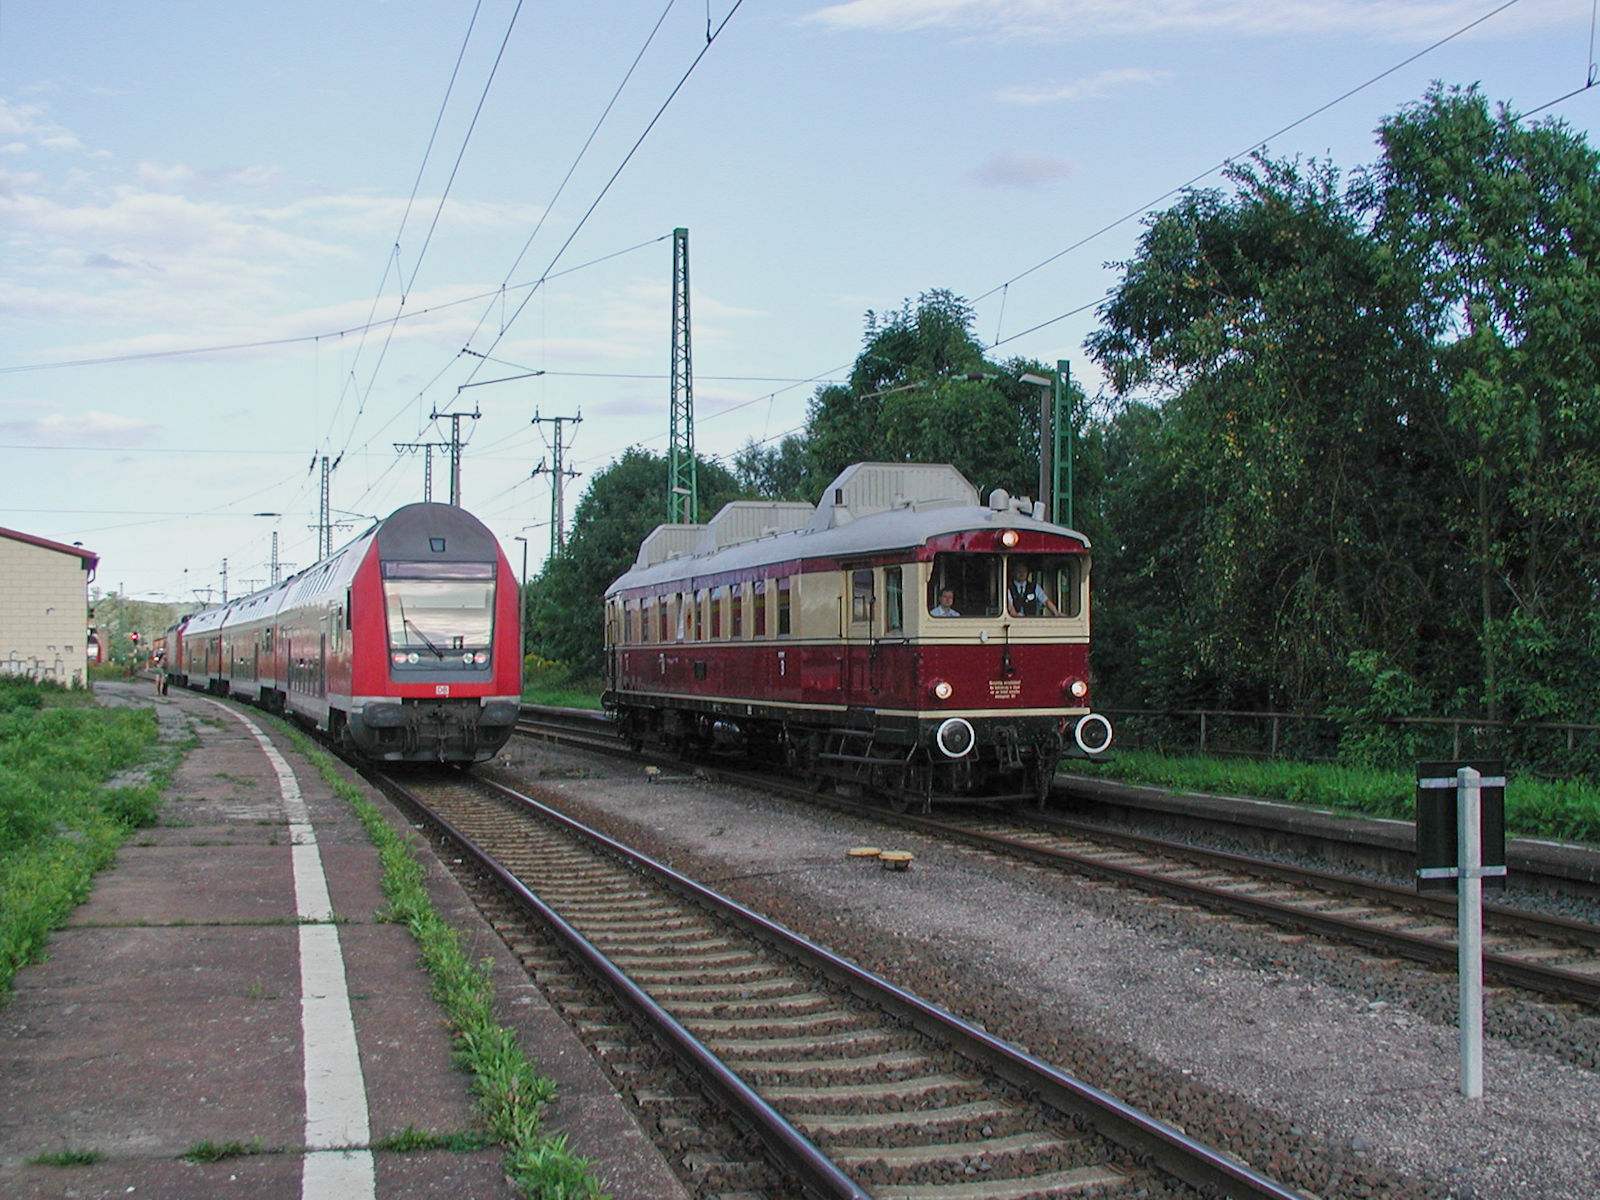 Am 26.08.2005 wurde der WUMAG-VT Nürnberg 761 als Regionalbahn zwischen Großheringen und Straußfurt eingesetzt. Während auf dem Nachbargleis eine andere Regionalbahn angekommen ist, macht sich der Triebwagen in Großheringen wieder auf den Weg.